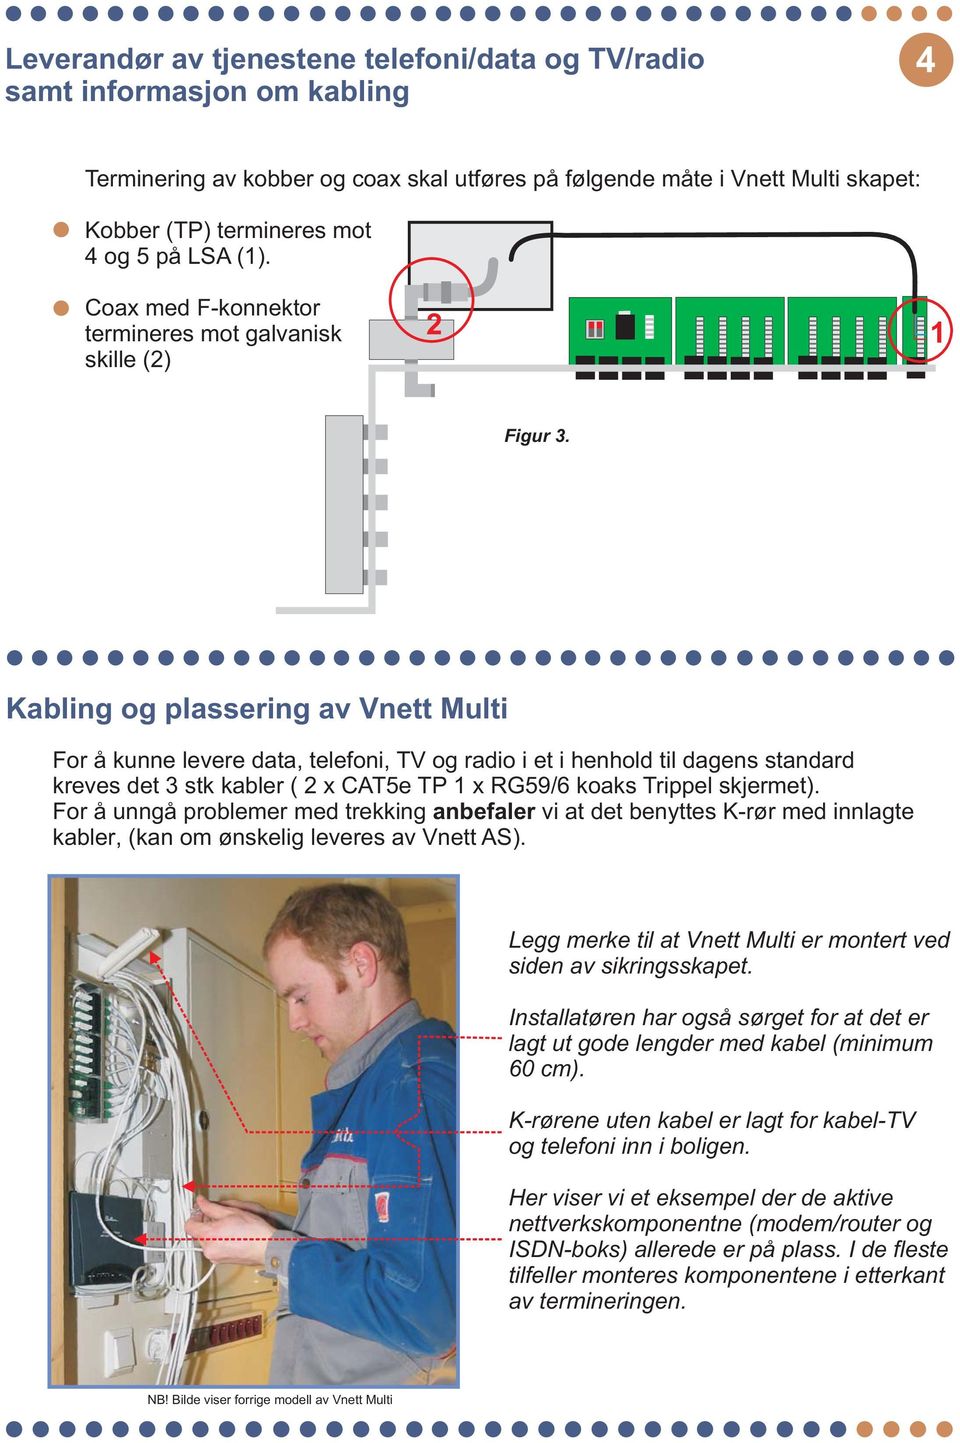 Kabling og plassering av Vnett Multi For å kunne levere data, telefoni, og radio i et i henhold til dagens standard kreves det 3 stk kabler (2xCAT5eTP1xRG59/6 koaks Trippel skjermet).